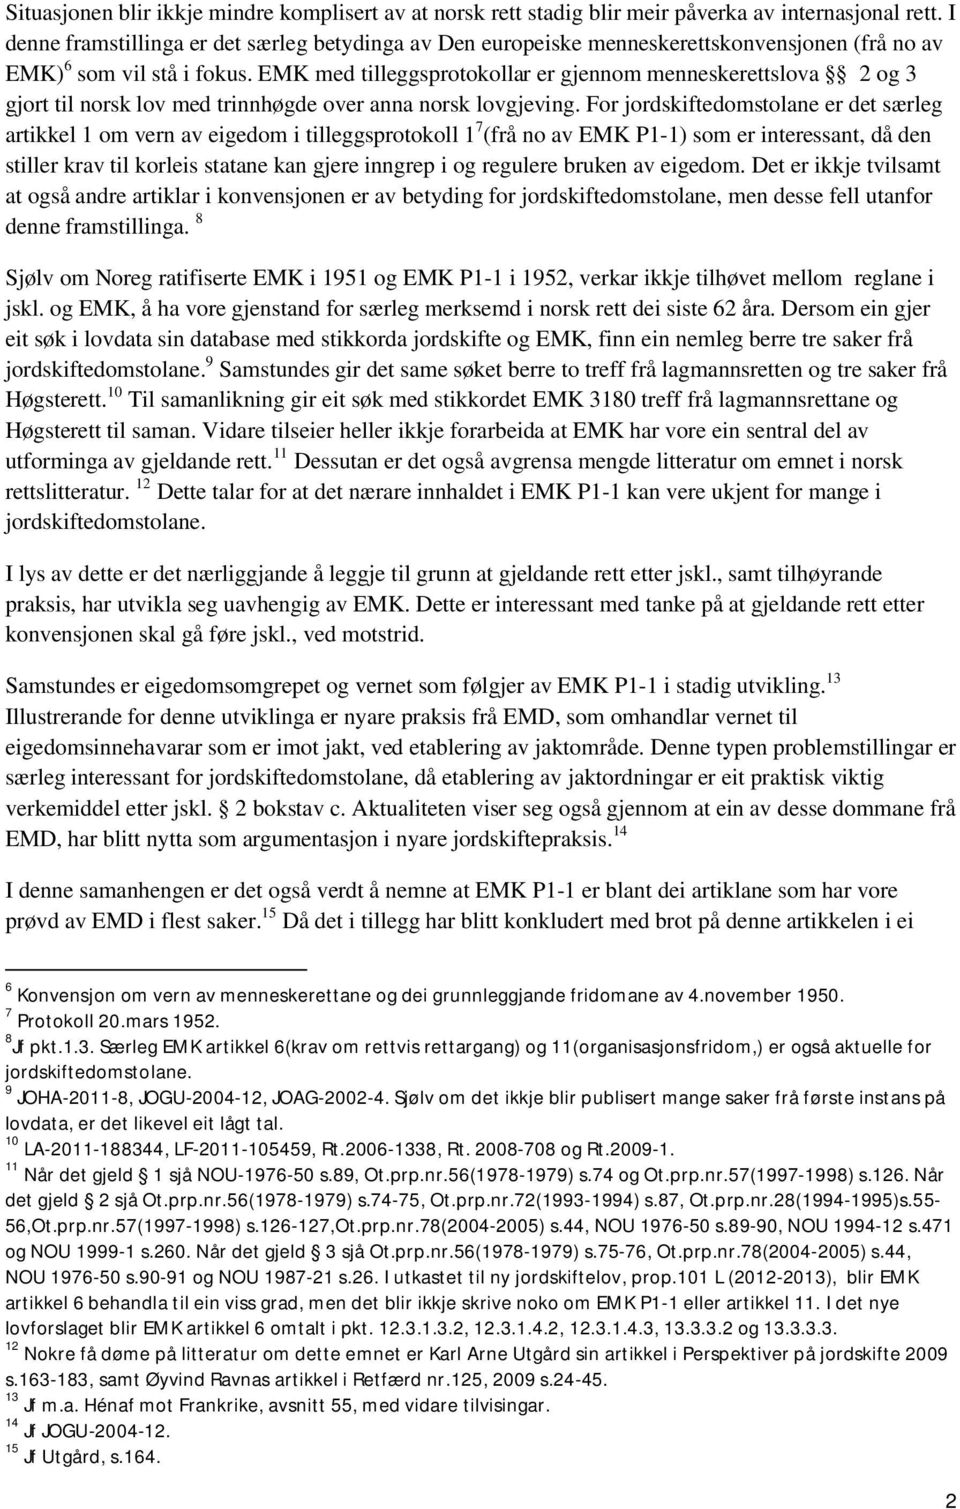 EMK med tilleggsprotokollar er gjennom menneskerettslova 2 og 3 gjort til norsk lov med trinnhøgde over anna norsk lovgjeving.